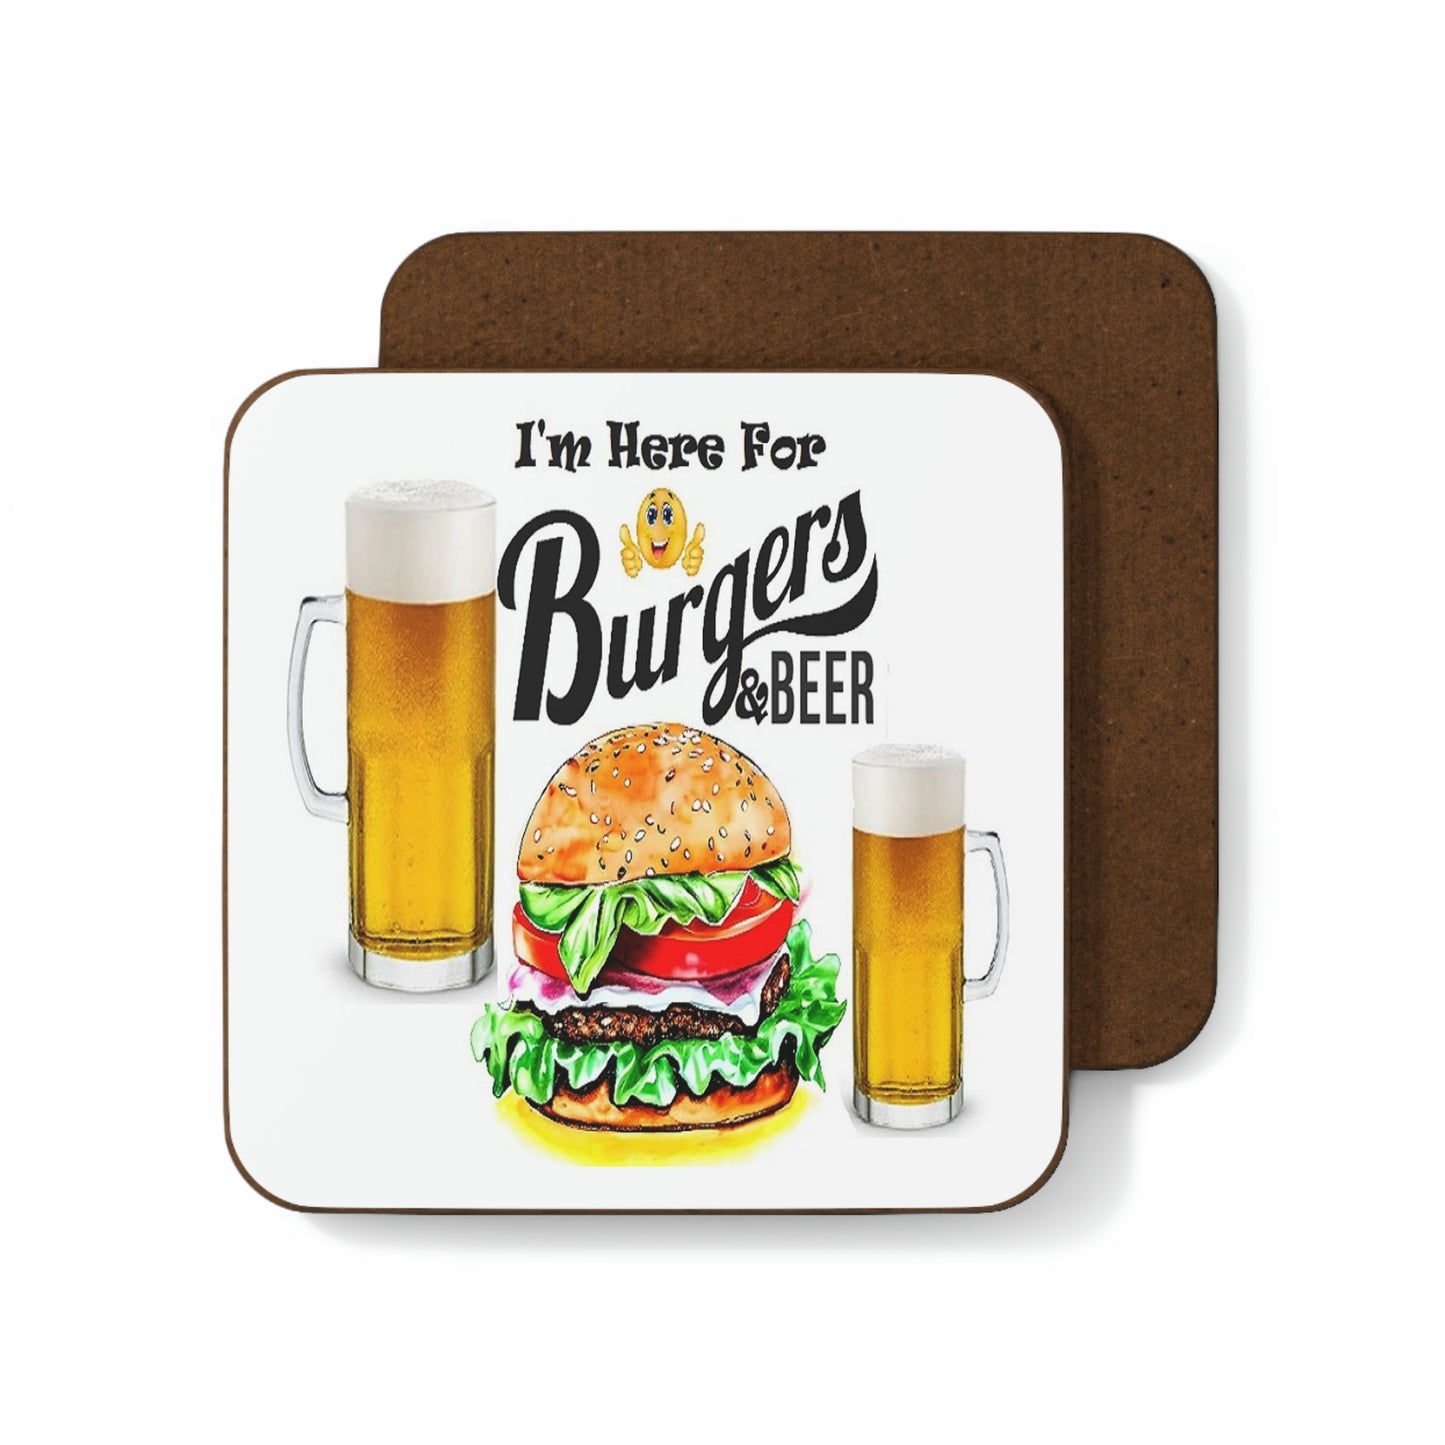 Burgers and Beer Hardboard Back Coaster